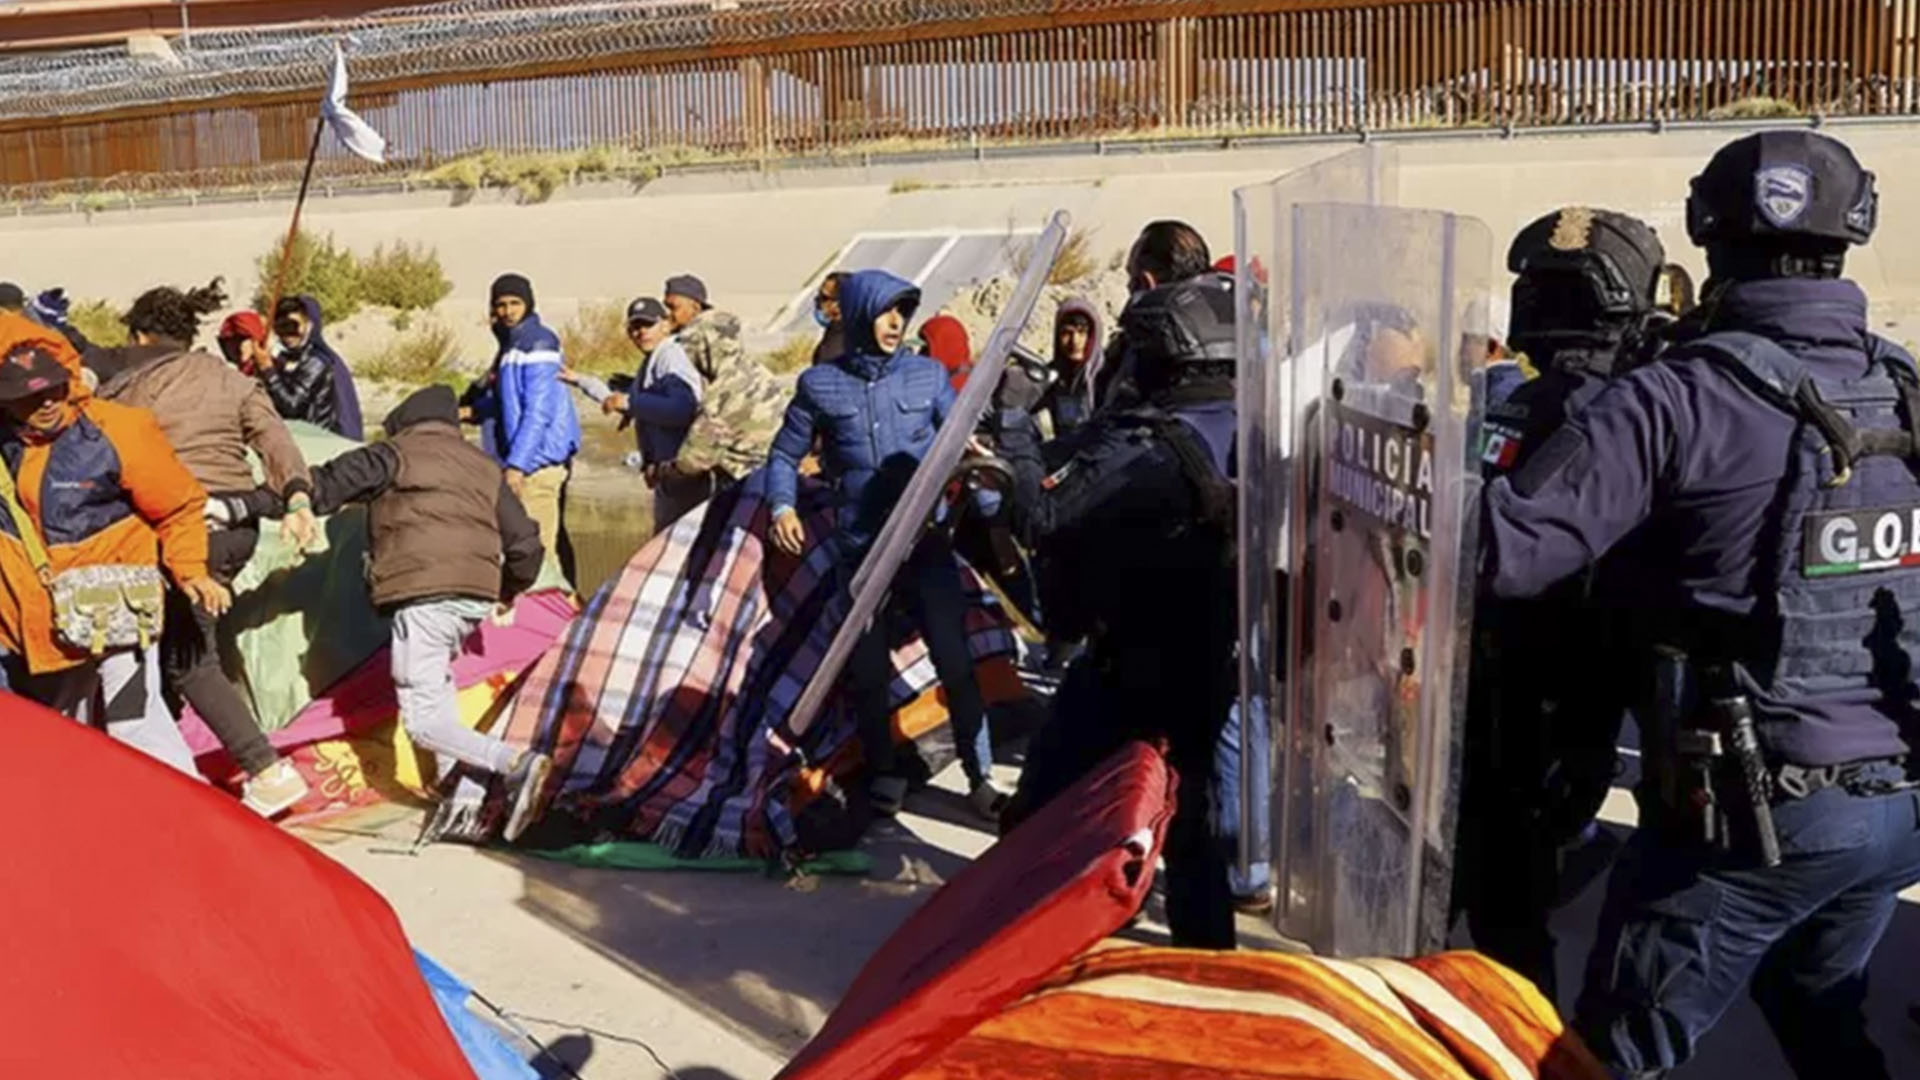 Al menos 500 migrantes venezolanos fueron desalojados del campamento a orillas del Río Bravo